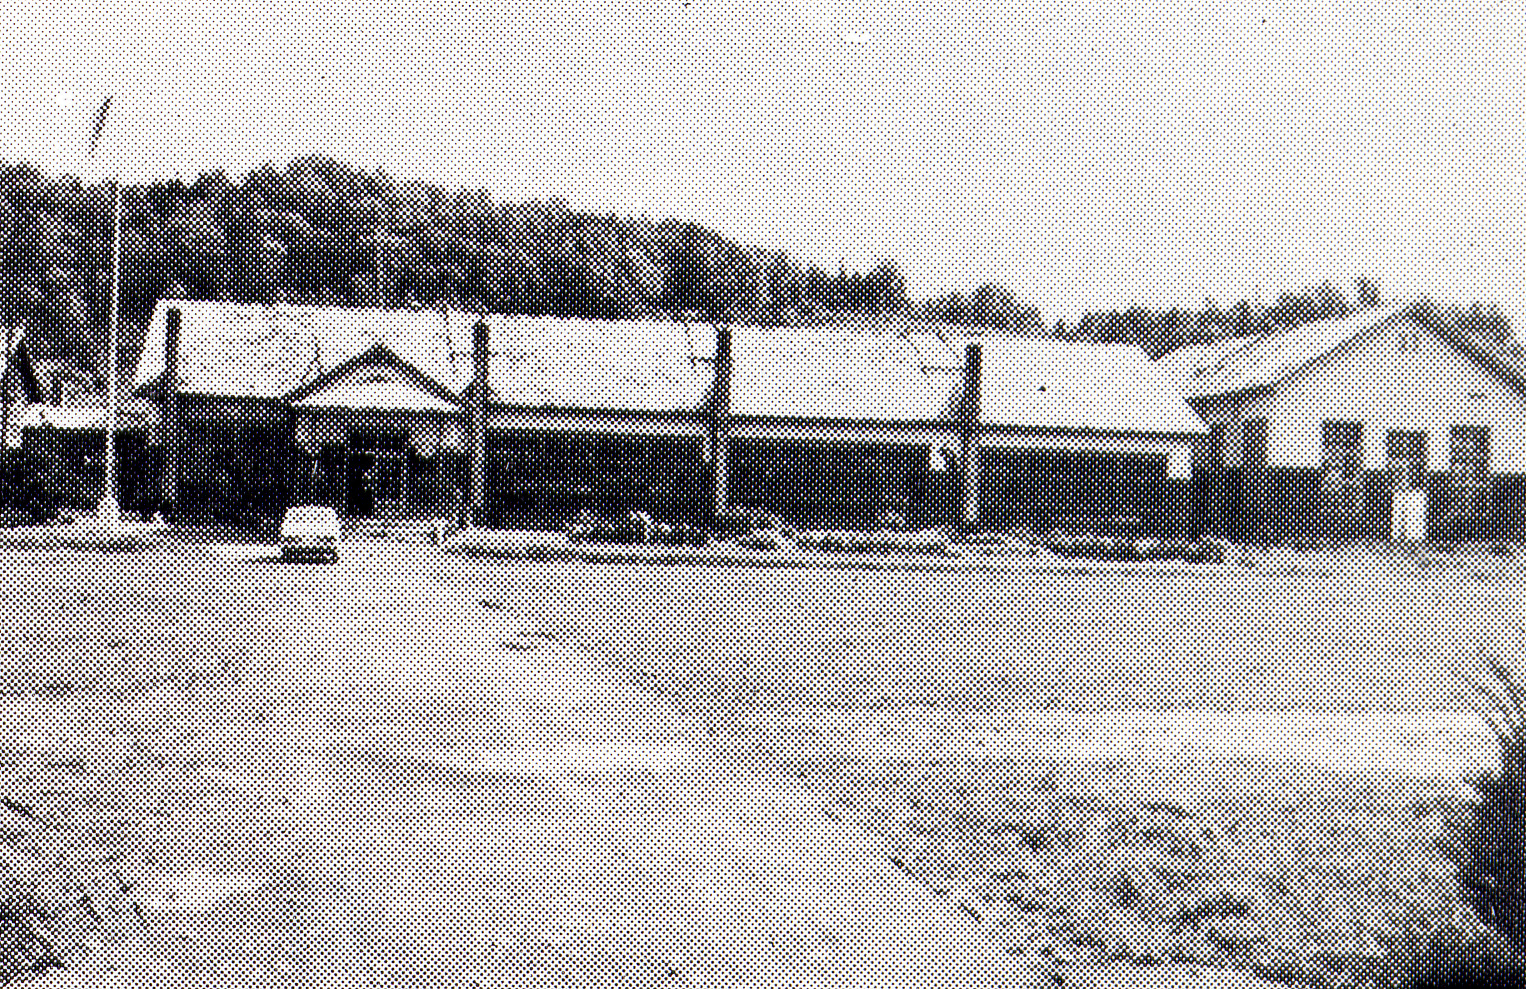 左側に入り口が設けられた旧伊文小学校校舎を校庭から撮影した白黒写真